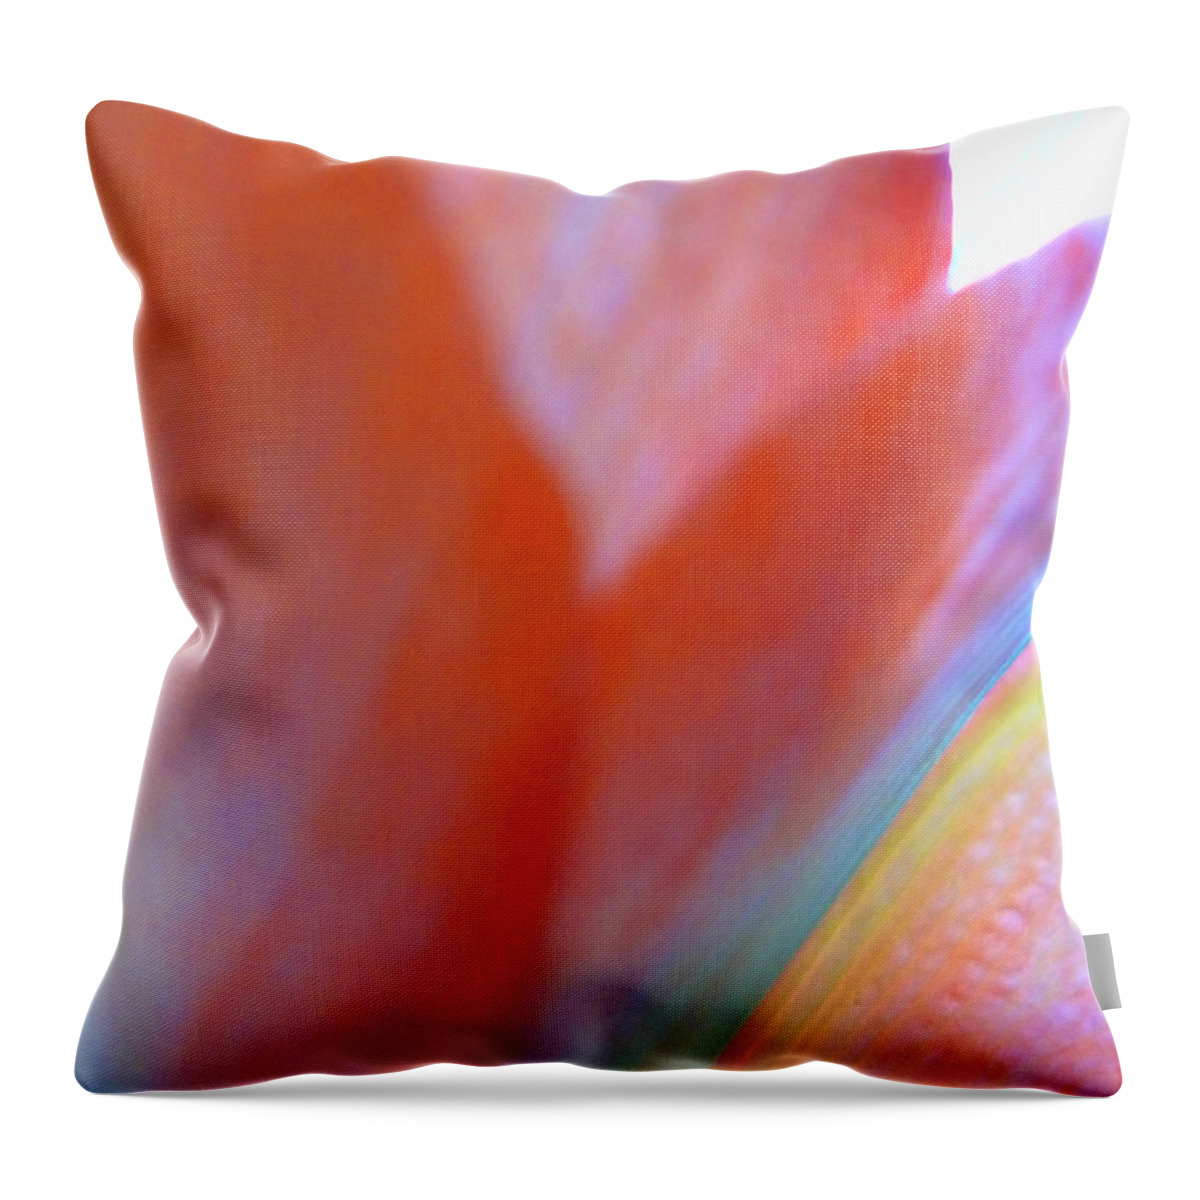  Throw Pillow featuring the photograph Pastel Petals by Joseph Hedaya